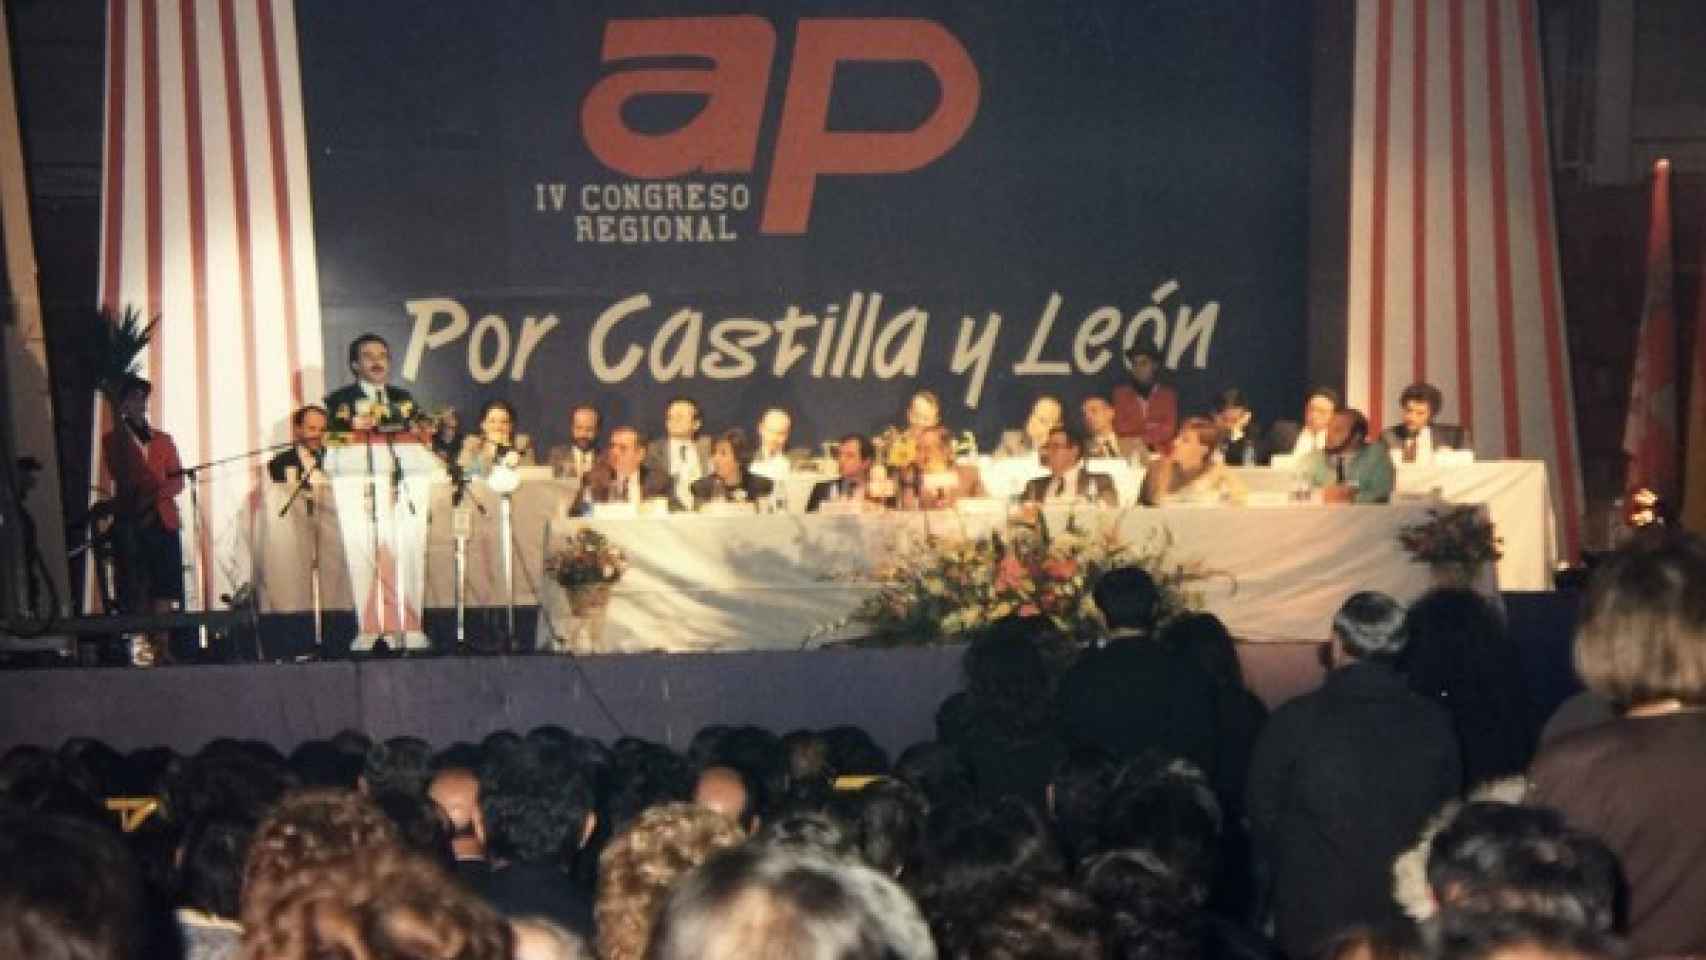 IV Congreso de Alianza Popular de Castilla y León en el que fue elegido Aznar como presidente del partido, en 1985.